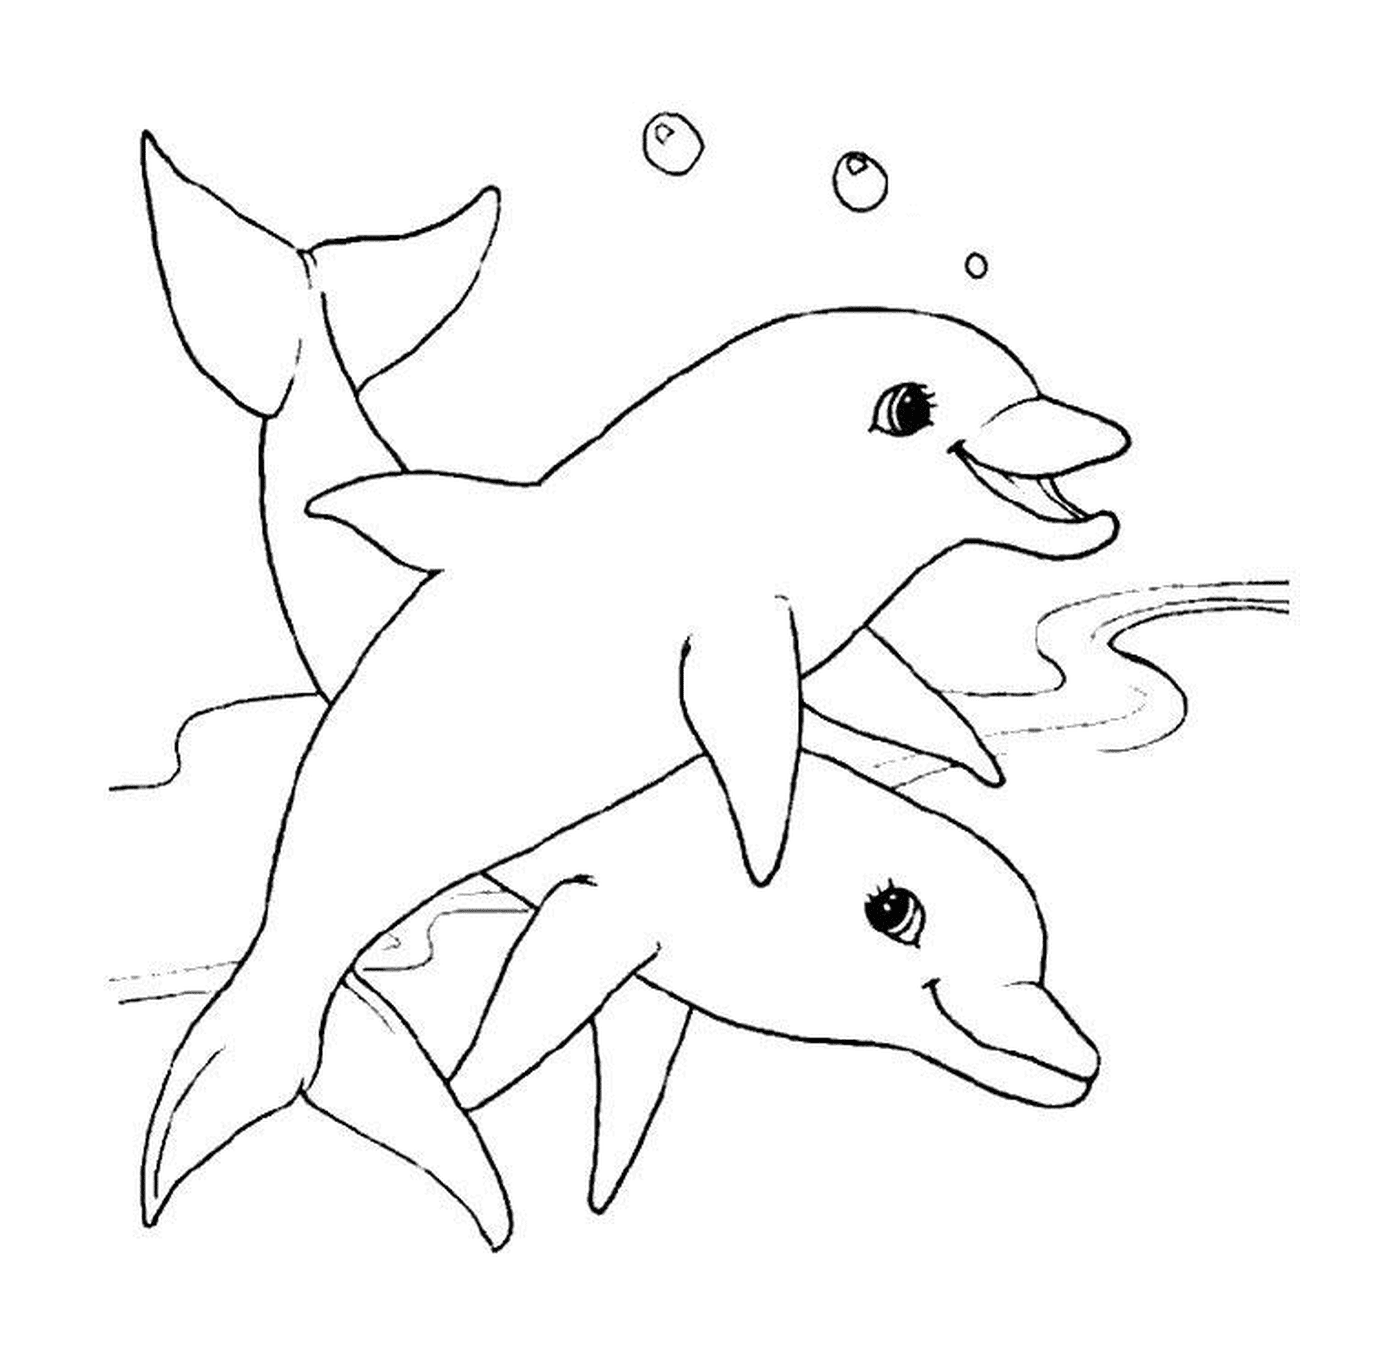  Dois Dauphins Nadando Graciosamente 